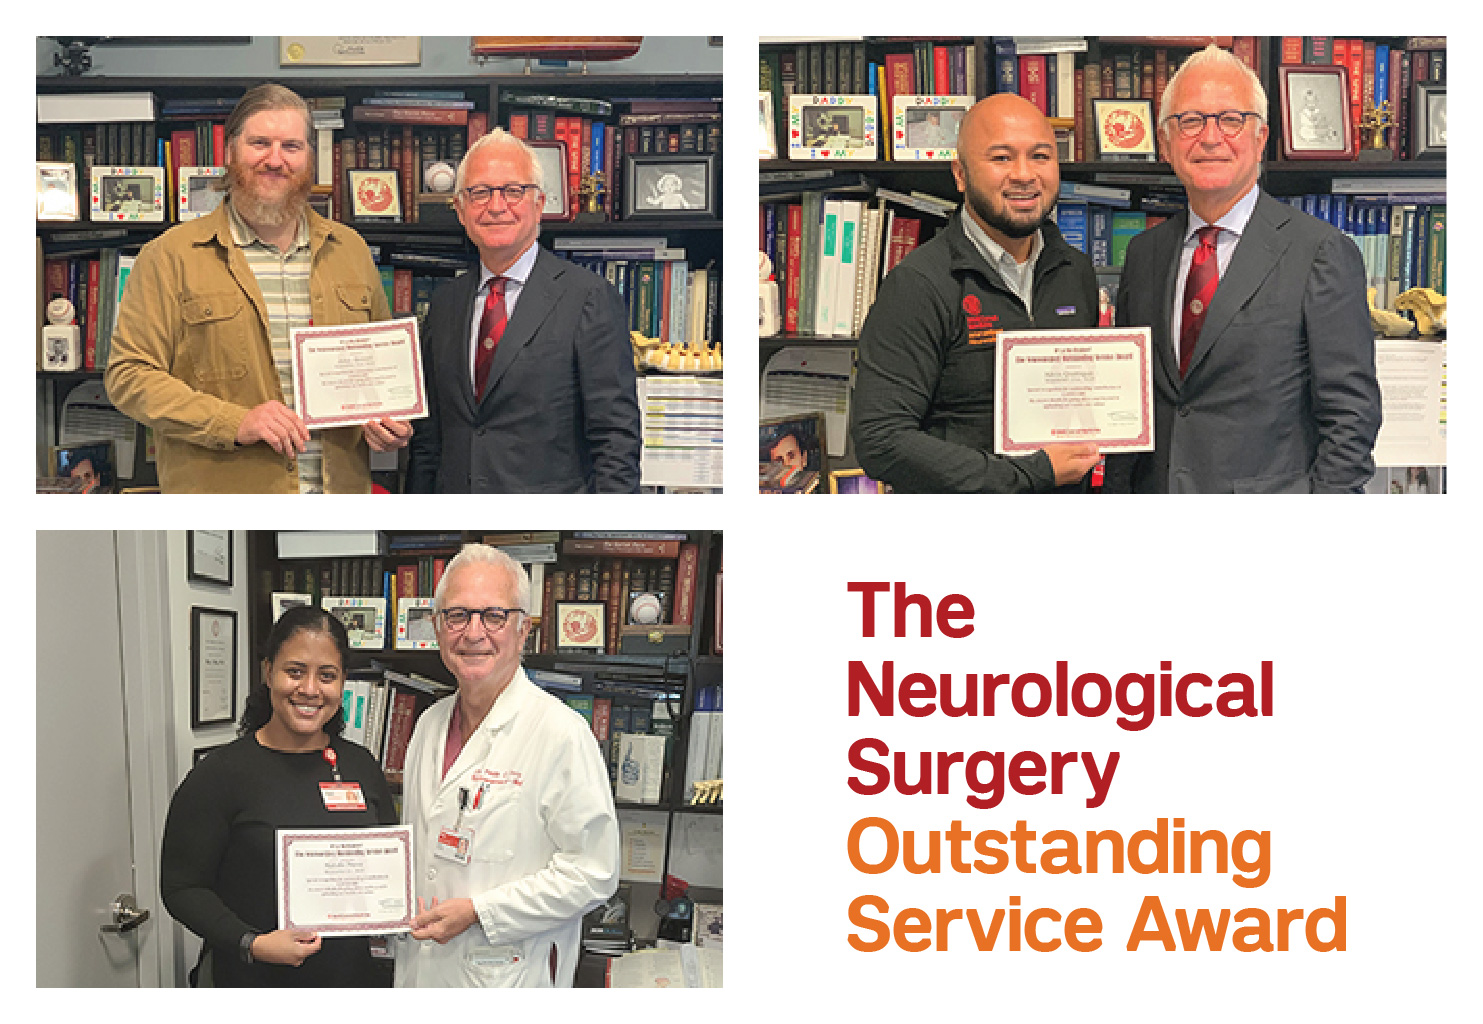 Neurosurgery Award Winners